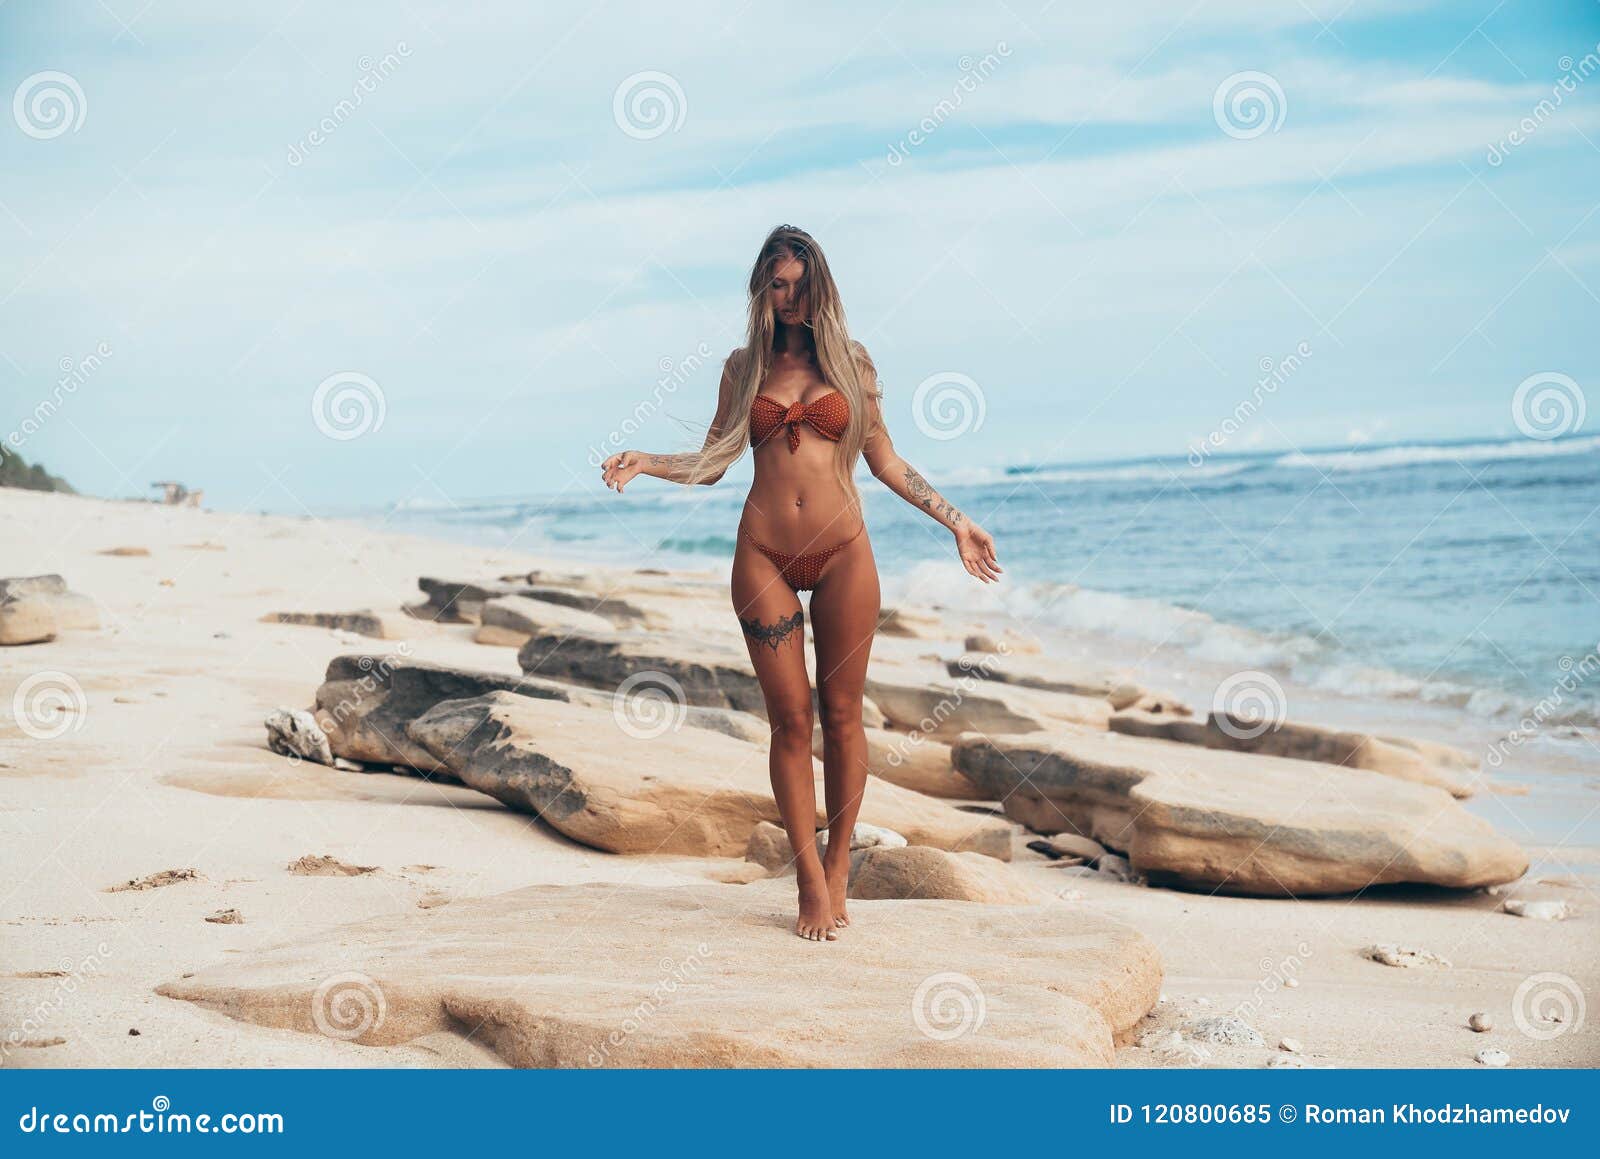 Beach nude in sex 